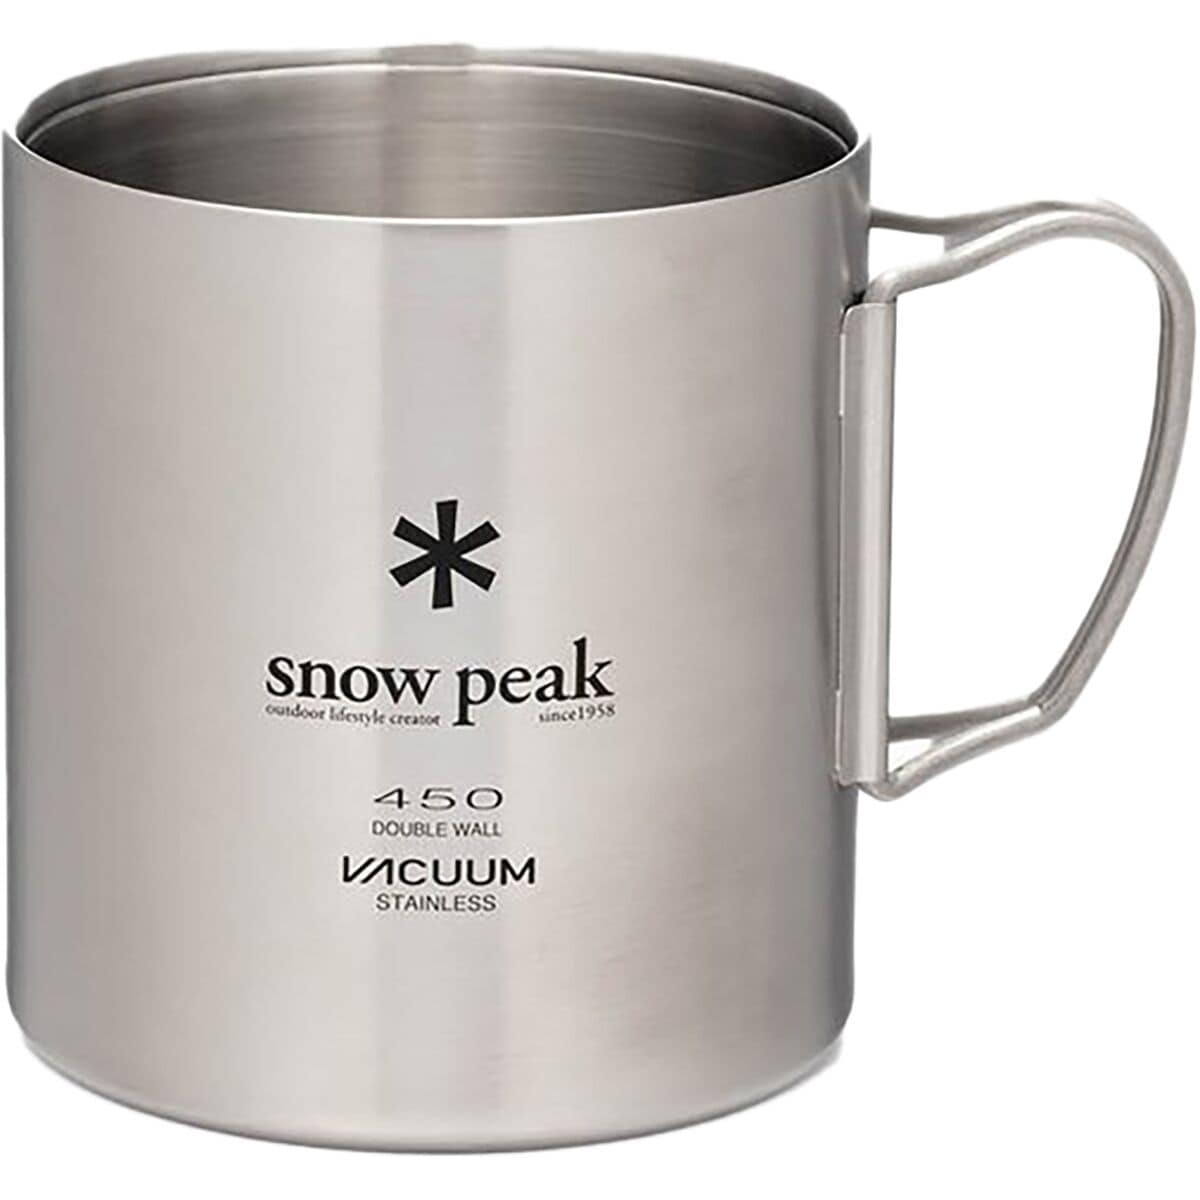 Snow Peak Insulated Stainless Steel 450 Mug